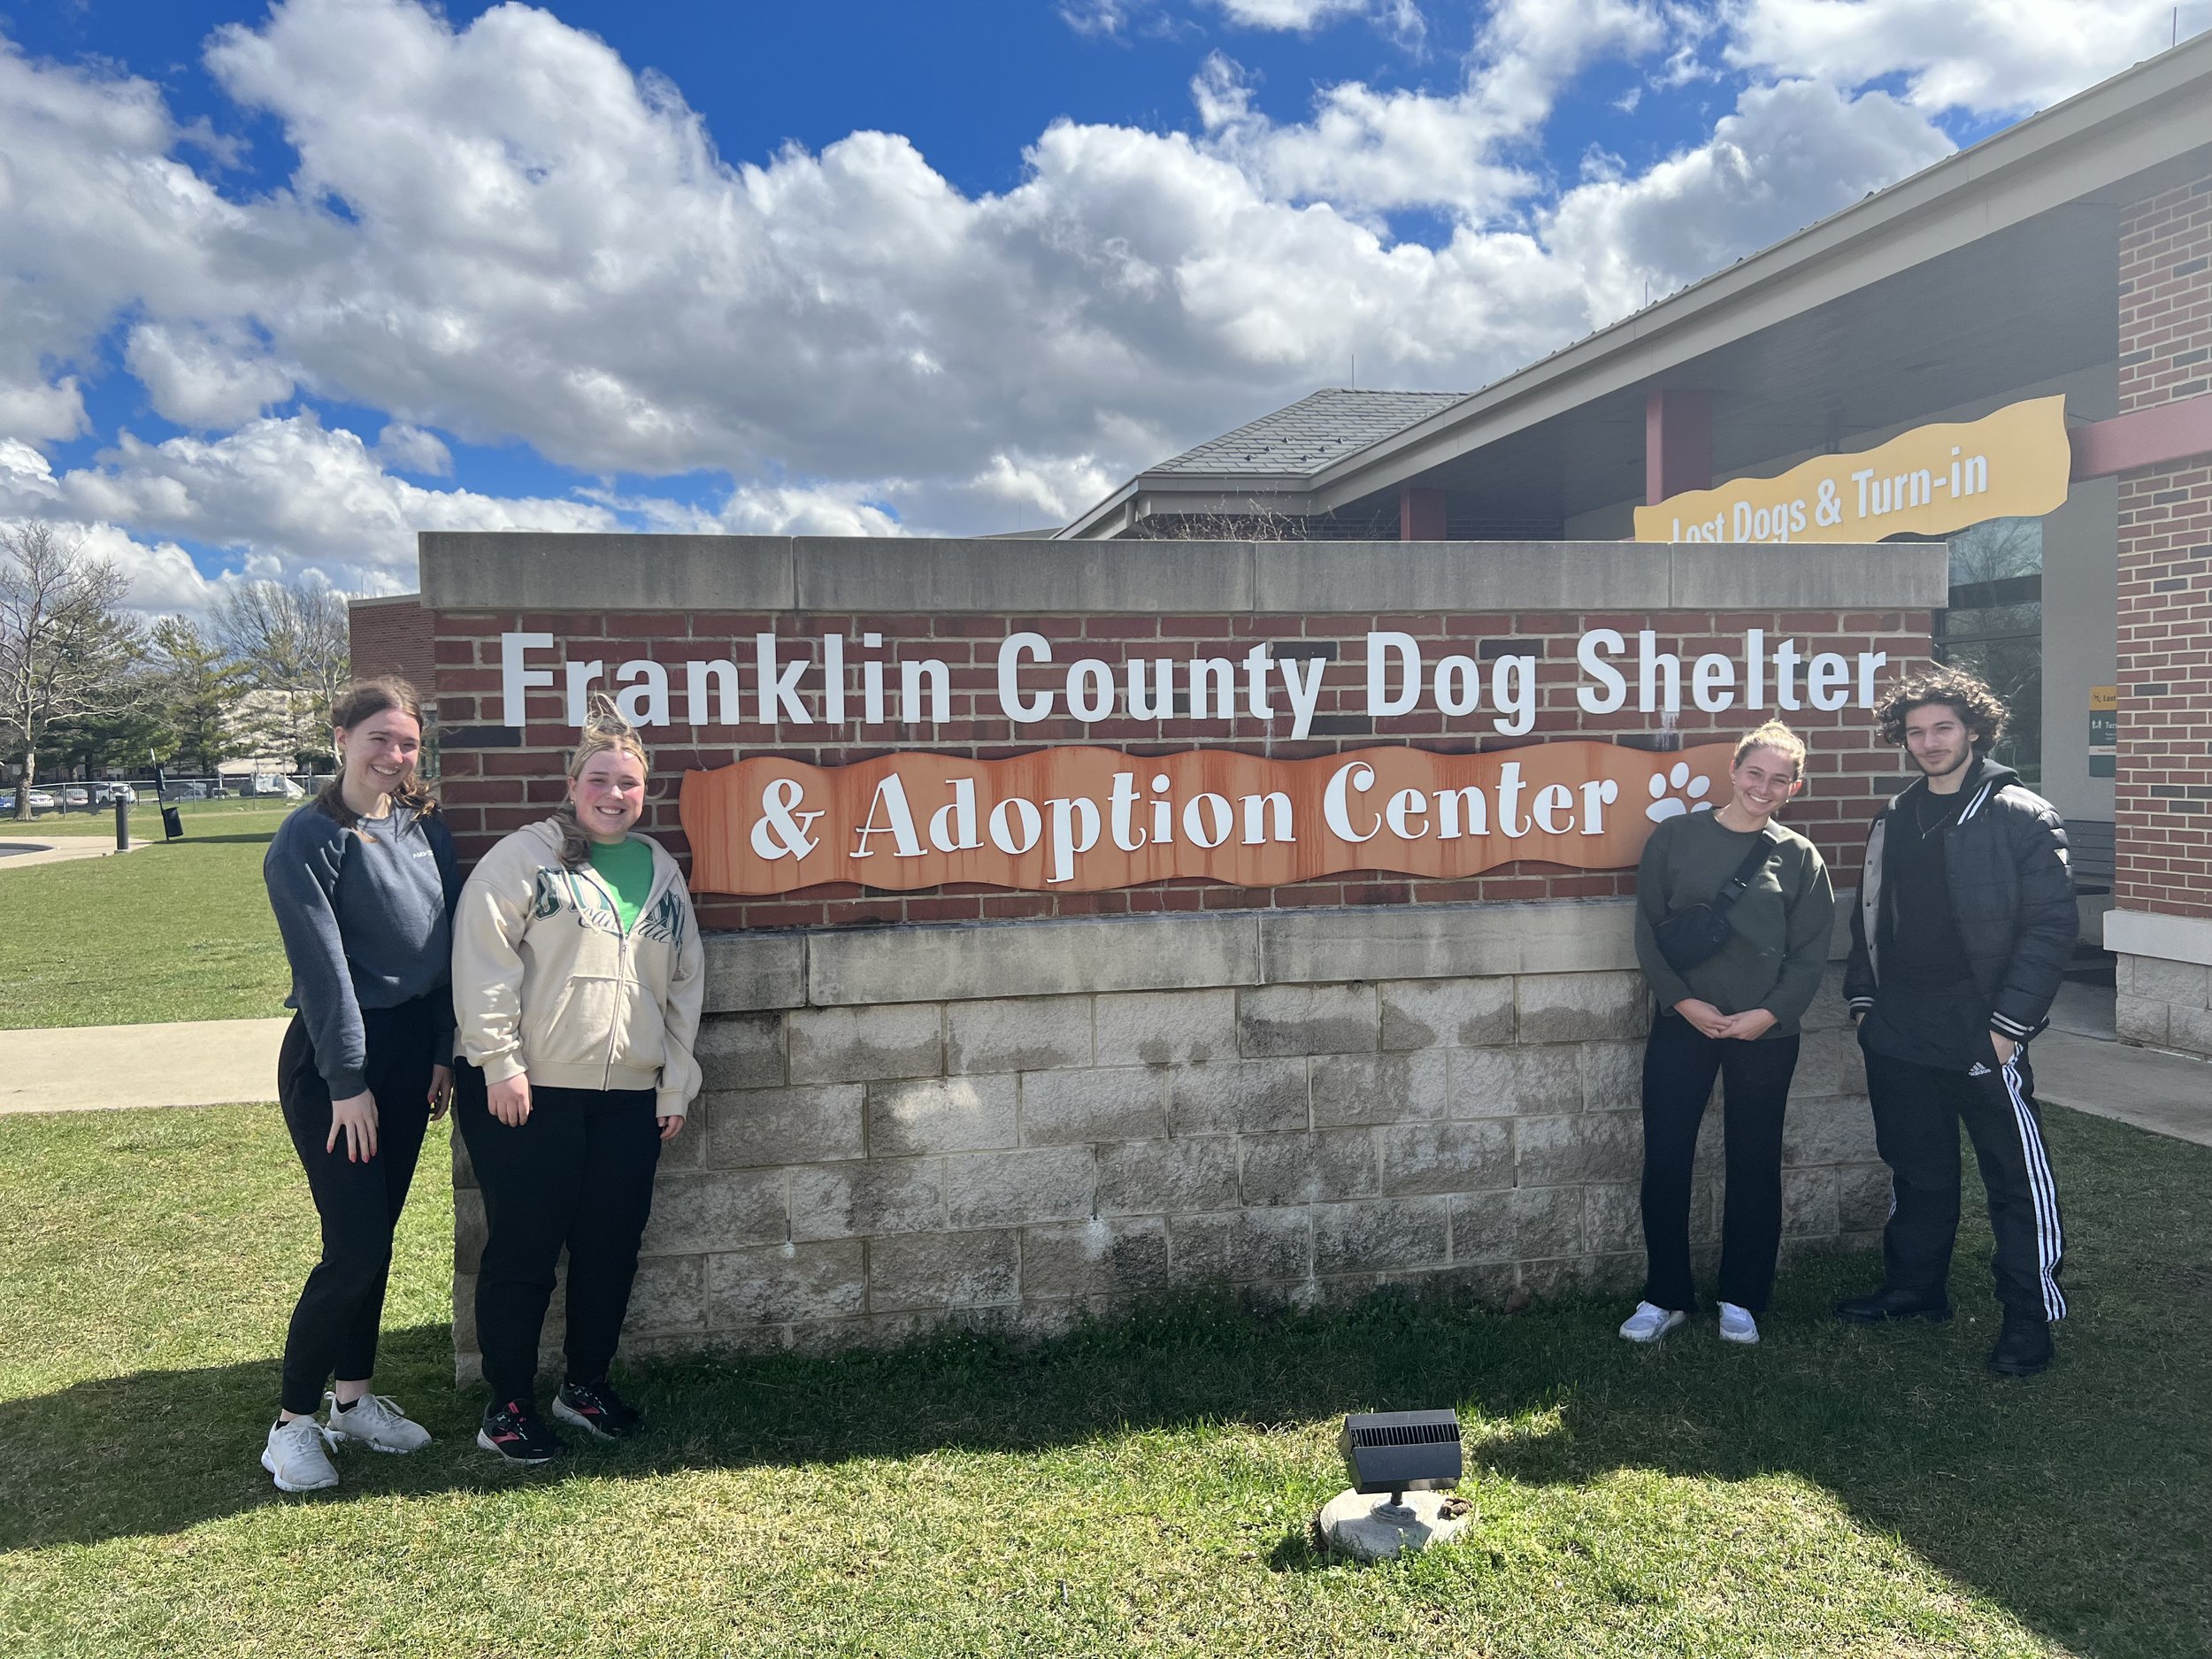 Franklin County Dog Shelter